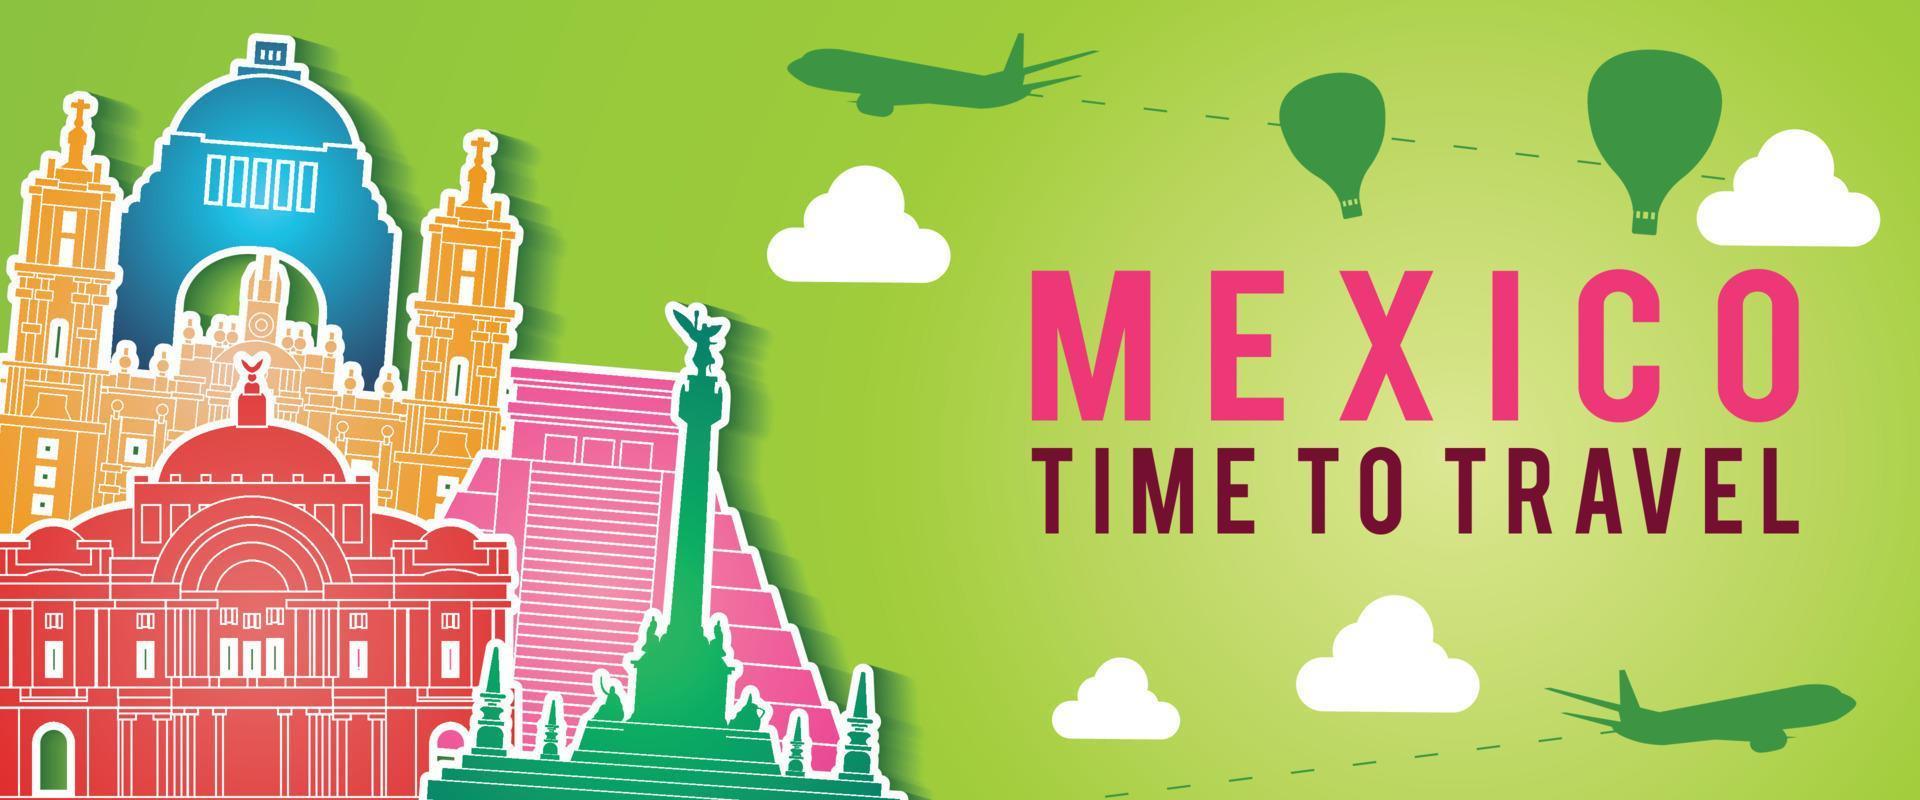 Grünes Banner von Mexiko berühmtes Wahrzeichen Silhouette bunten Stil, Flugzeug und Ballon fliegen mit Wolke herum vektor